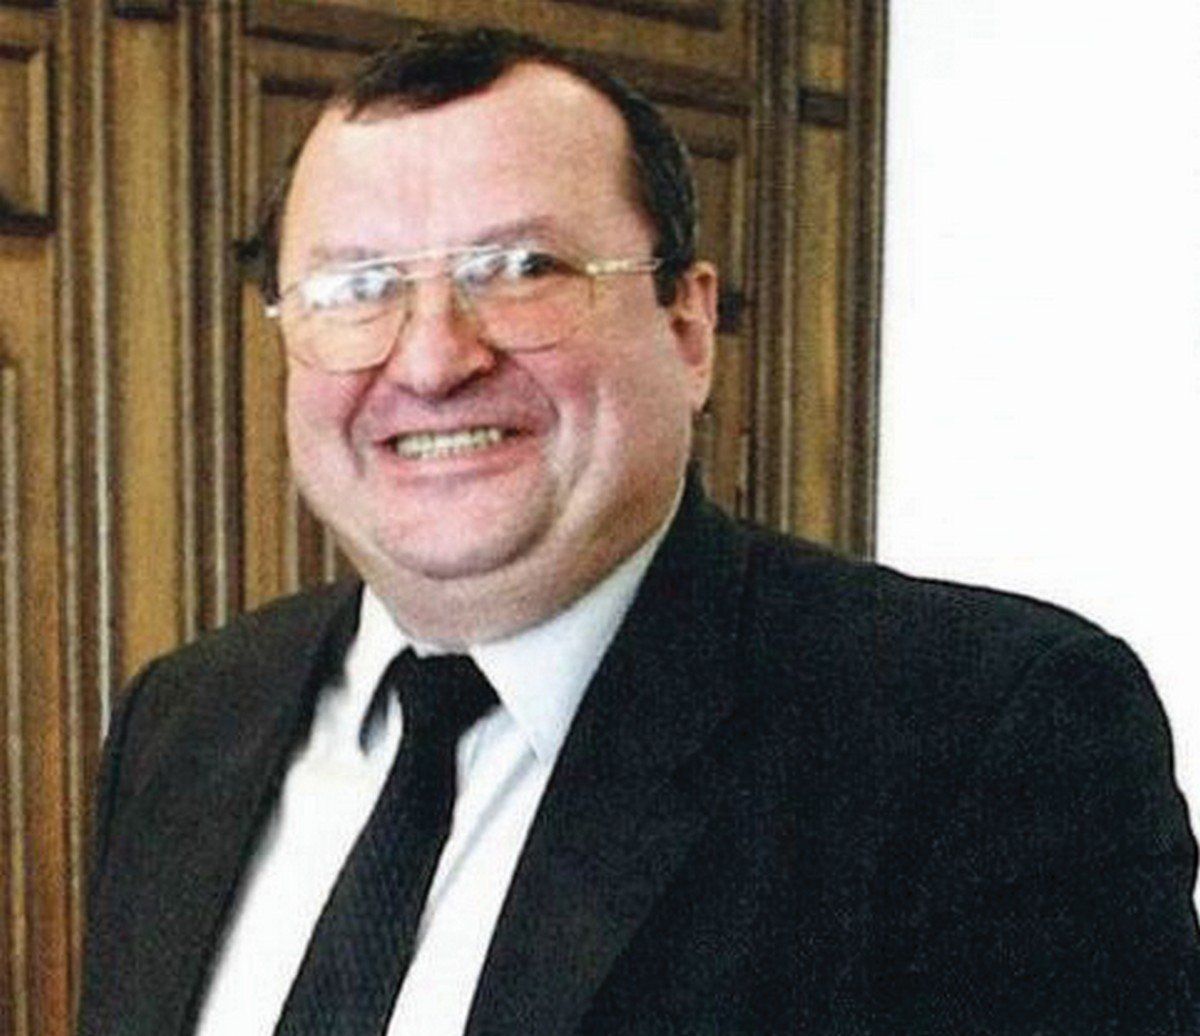 Петро Германчук – Начальник ГоловКРУ Міністерства фінансів України з липня 2001 р. до лютого 2005 р.